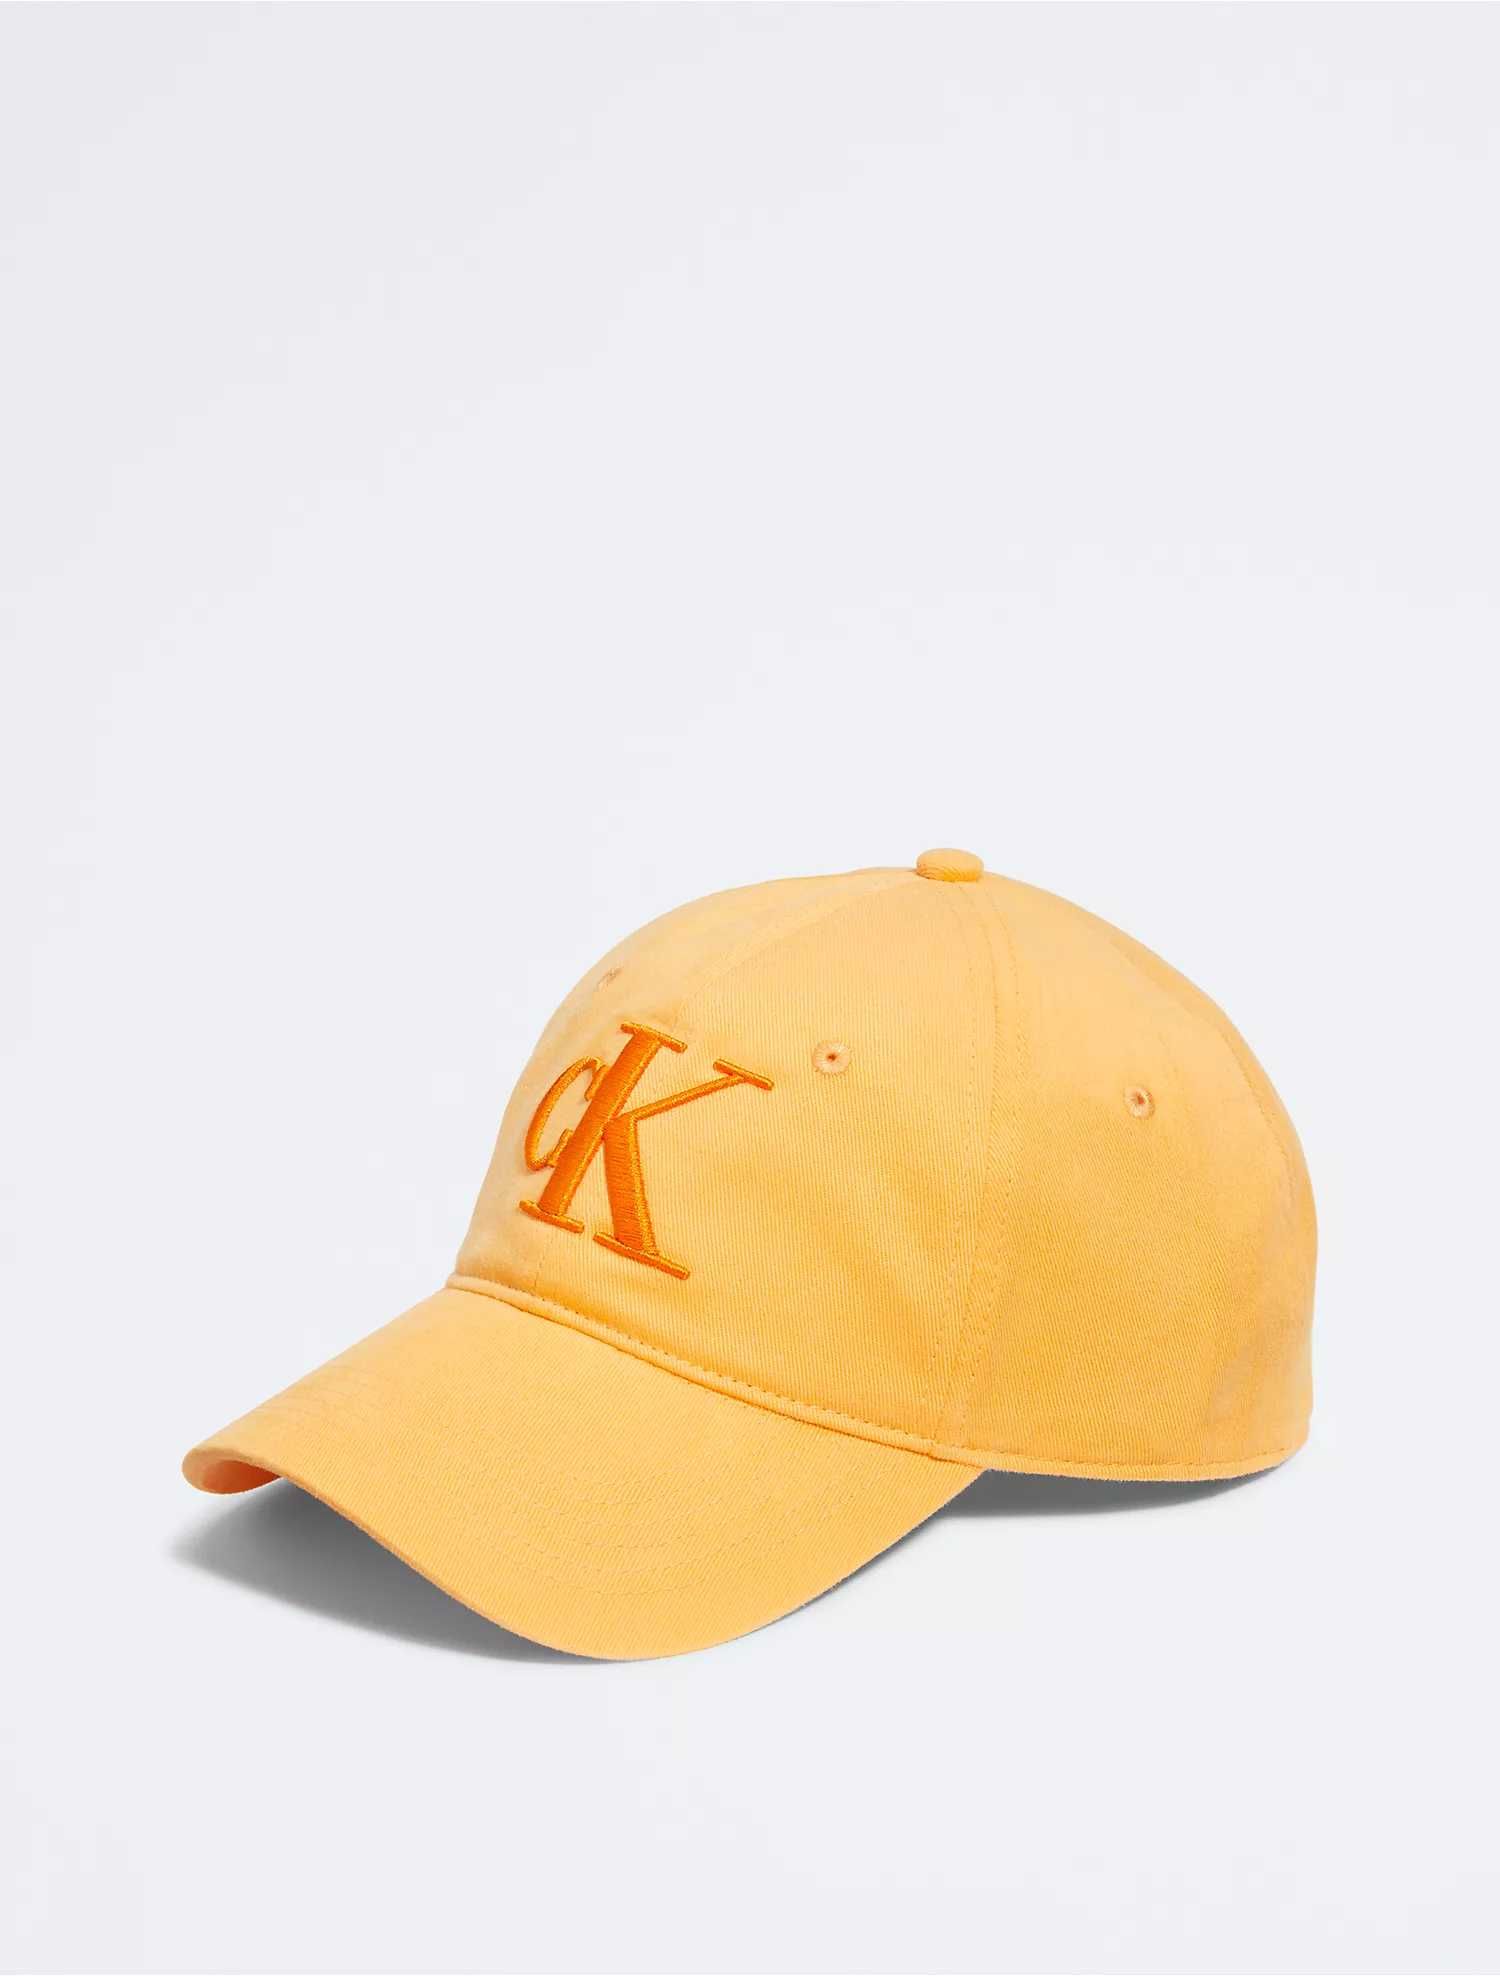 Новая кепка calvin klein бейсболка (ck orange twill logo cap)с америки